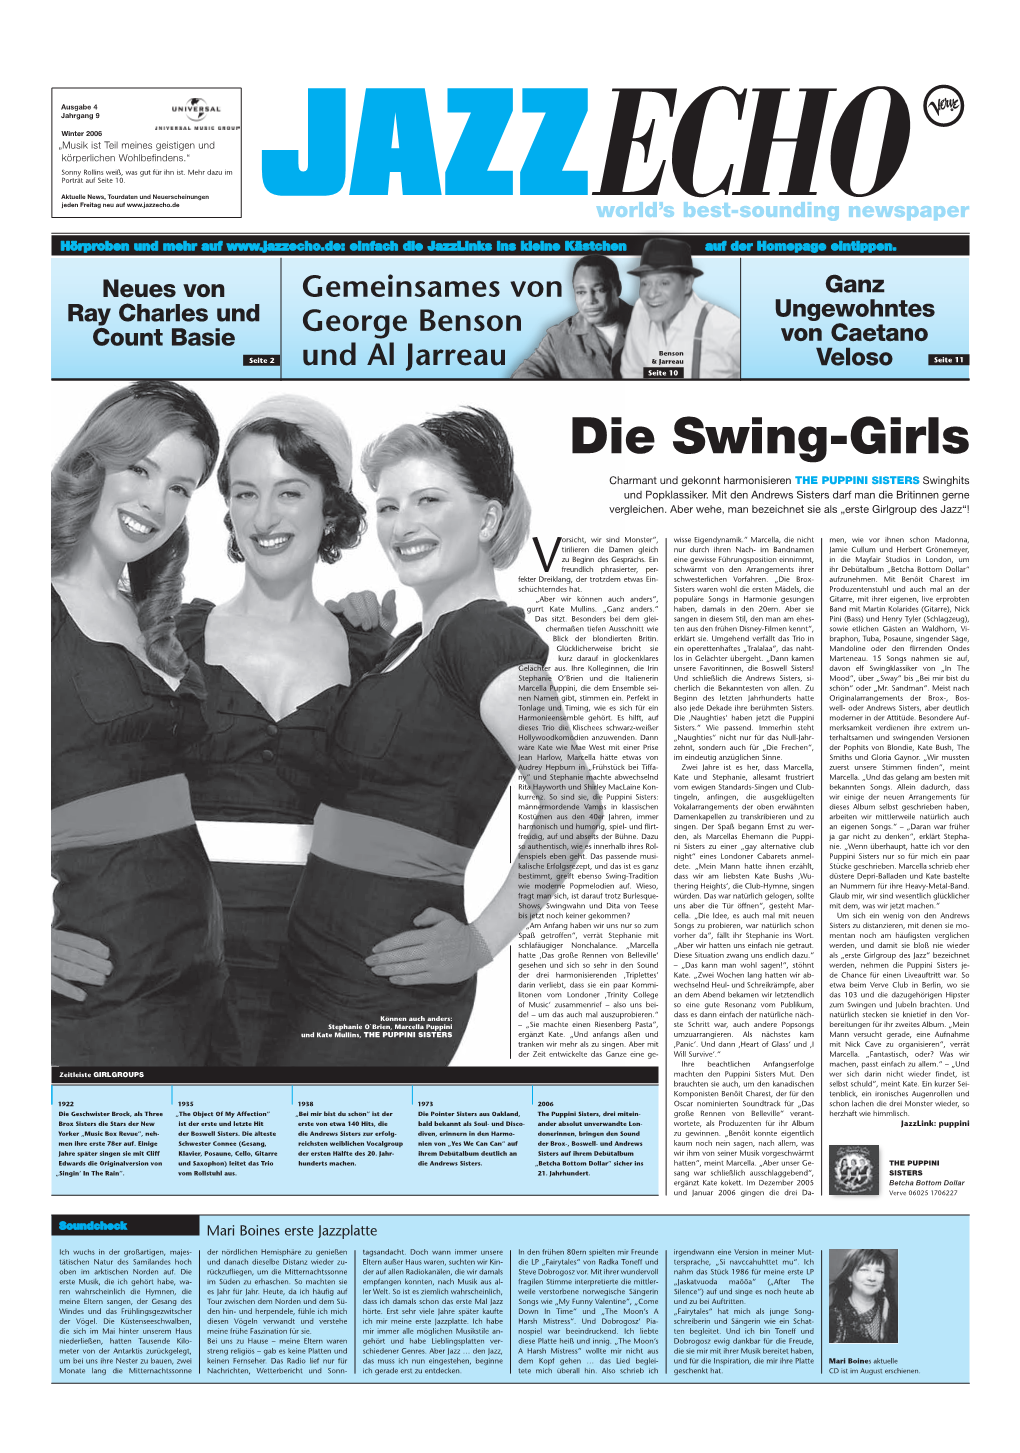 Die Swing-Girls